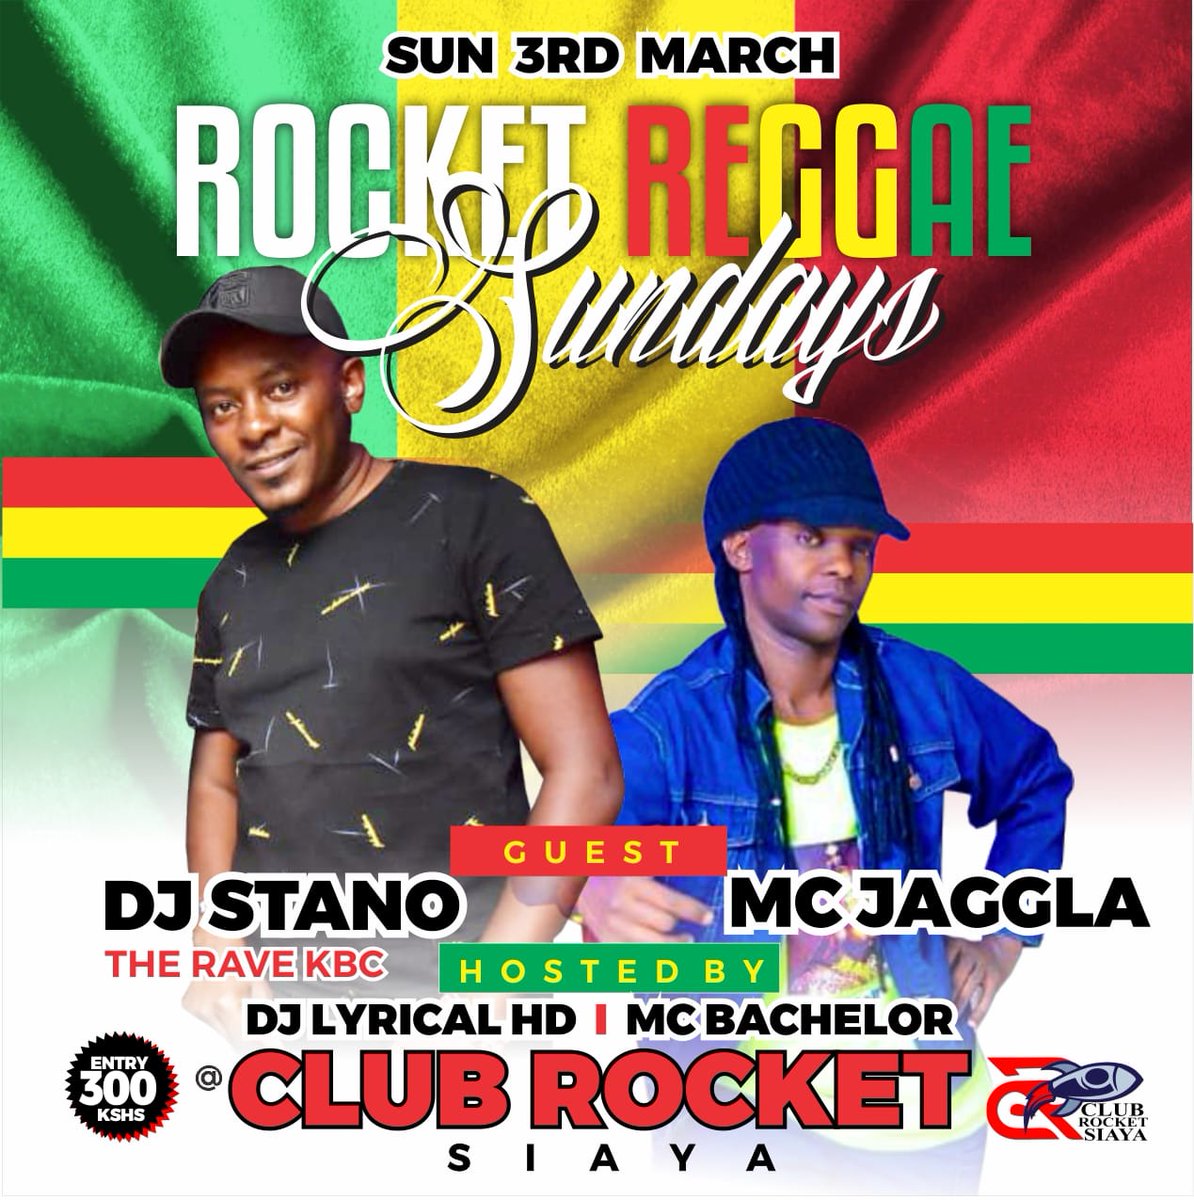 Reggae weekend loaded!! Leo Sato Nyaima Annex, Kendu Bay we mash up. Kesho Sunday Club Rocket , Siaya we light it up!! Blessed Reggae weekend wakuu.. #TheRaveFamily #ReggaeMusicSoNice